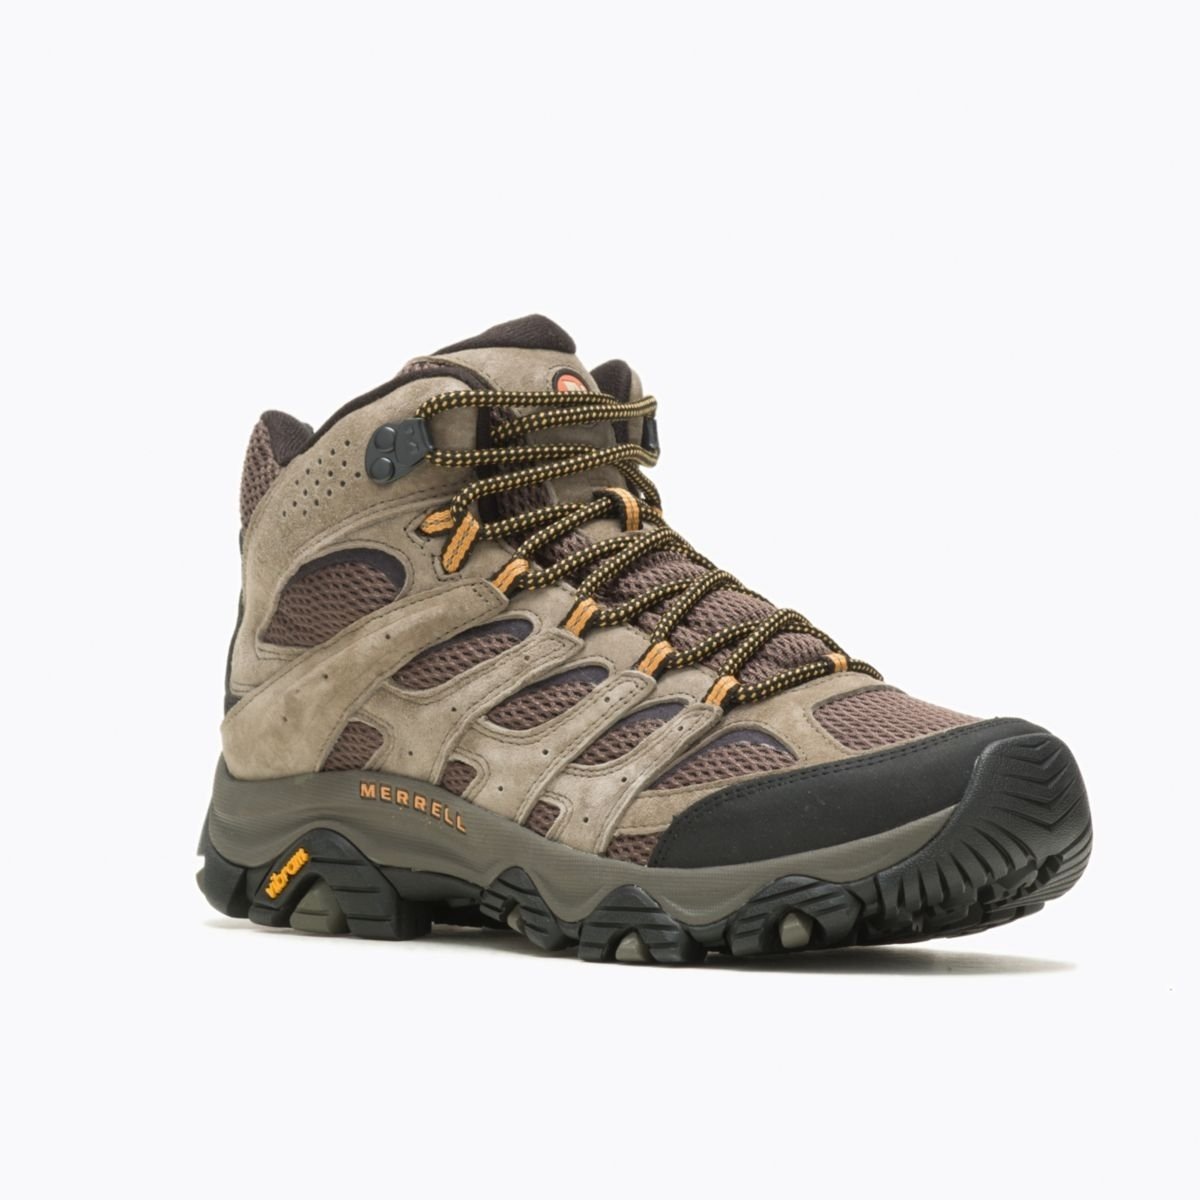 Merrell Men's Moab 3 Mid GORE-TEX Hiking Boot Walnut - J035795 WALNUT - WALNUT, 8.5